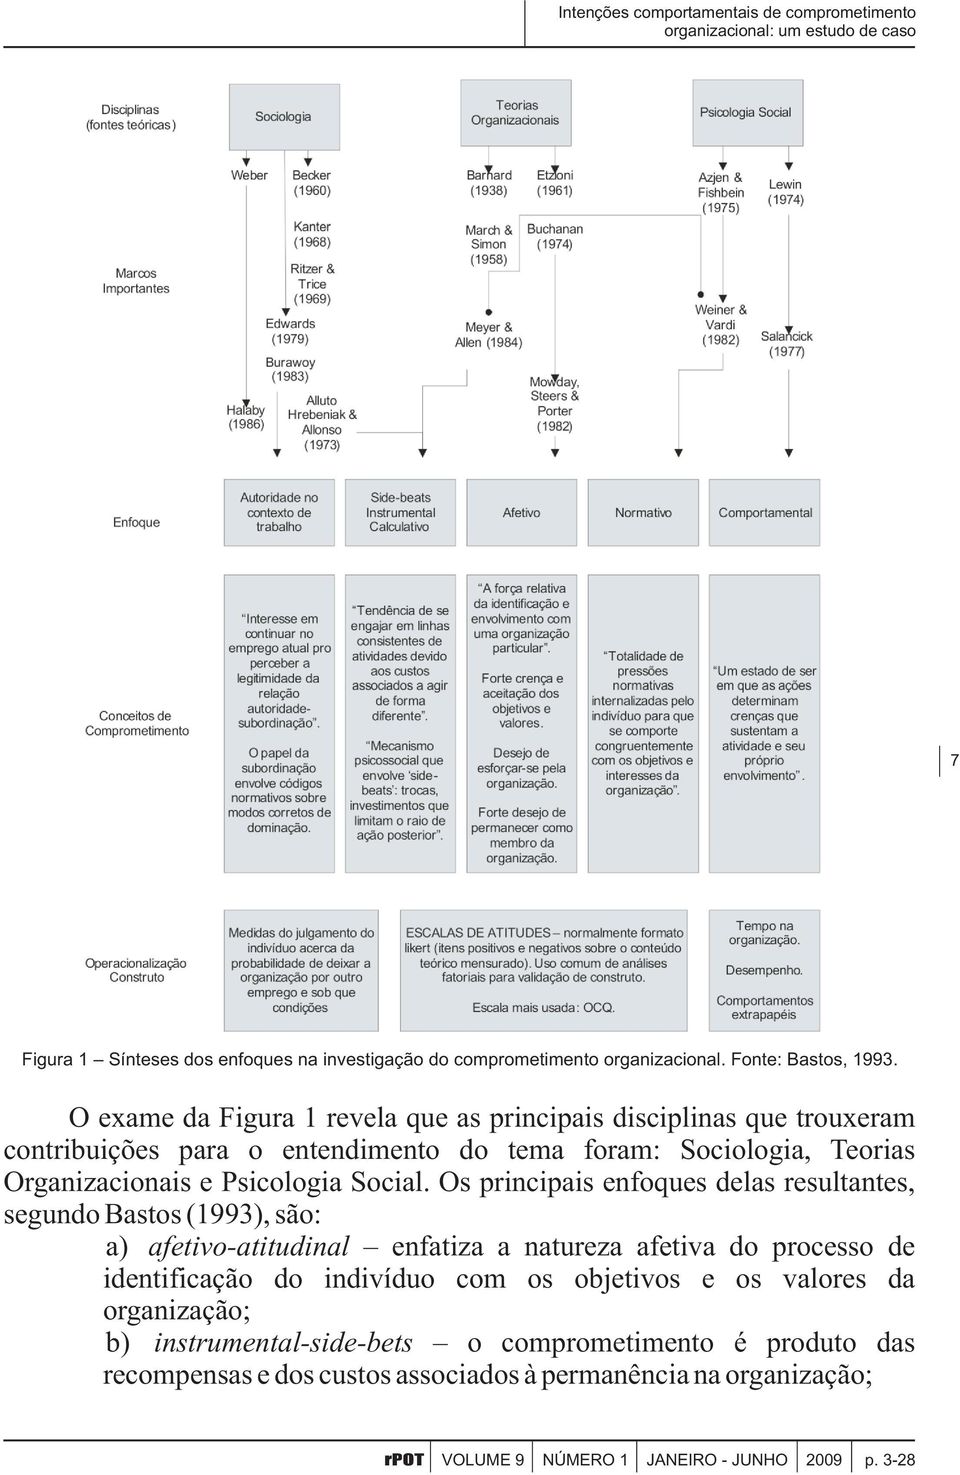 Os principais enfoques delas resultantes, segundo Bastos (1993), são: a) afetivo-atitudinal enfatiza a natureza afetiva do processo de identificação do indivíduo com os objetivos e os